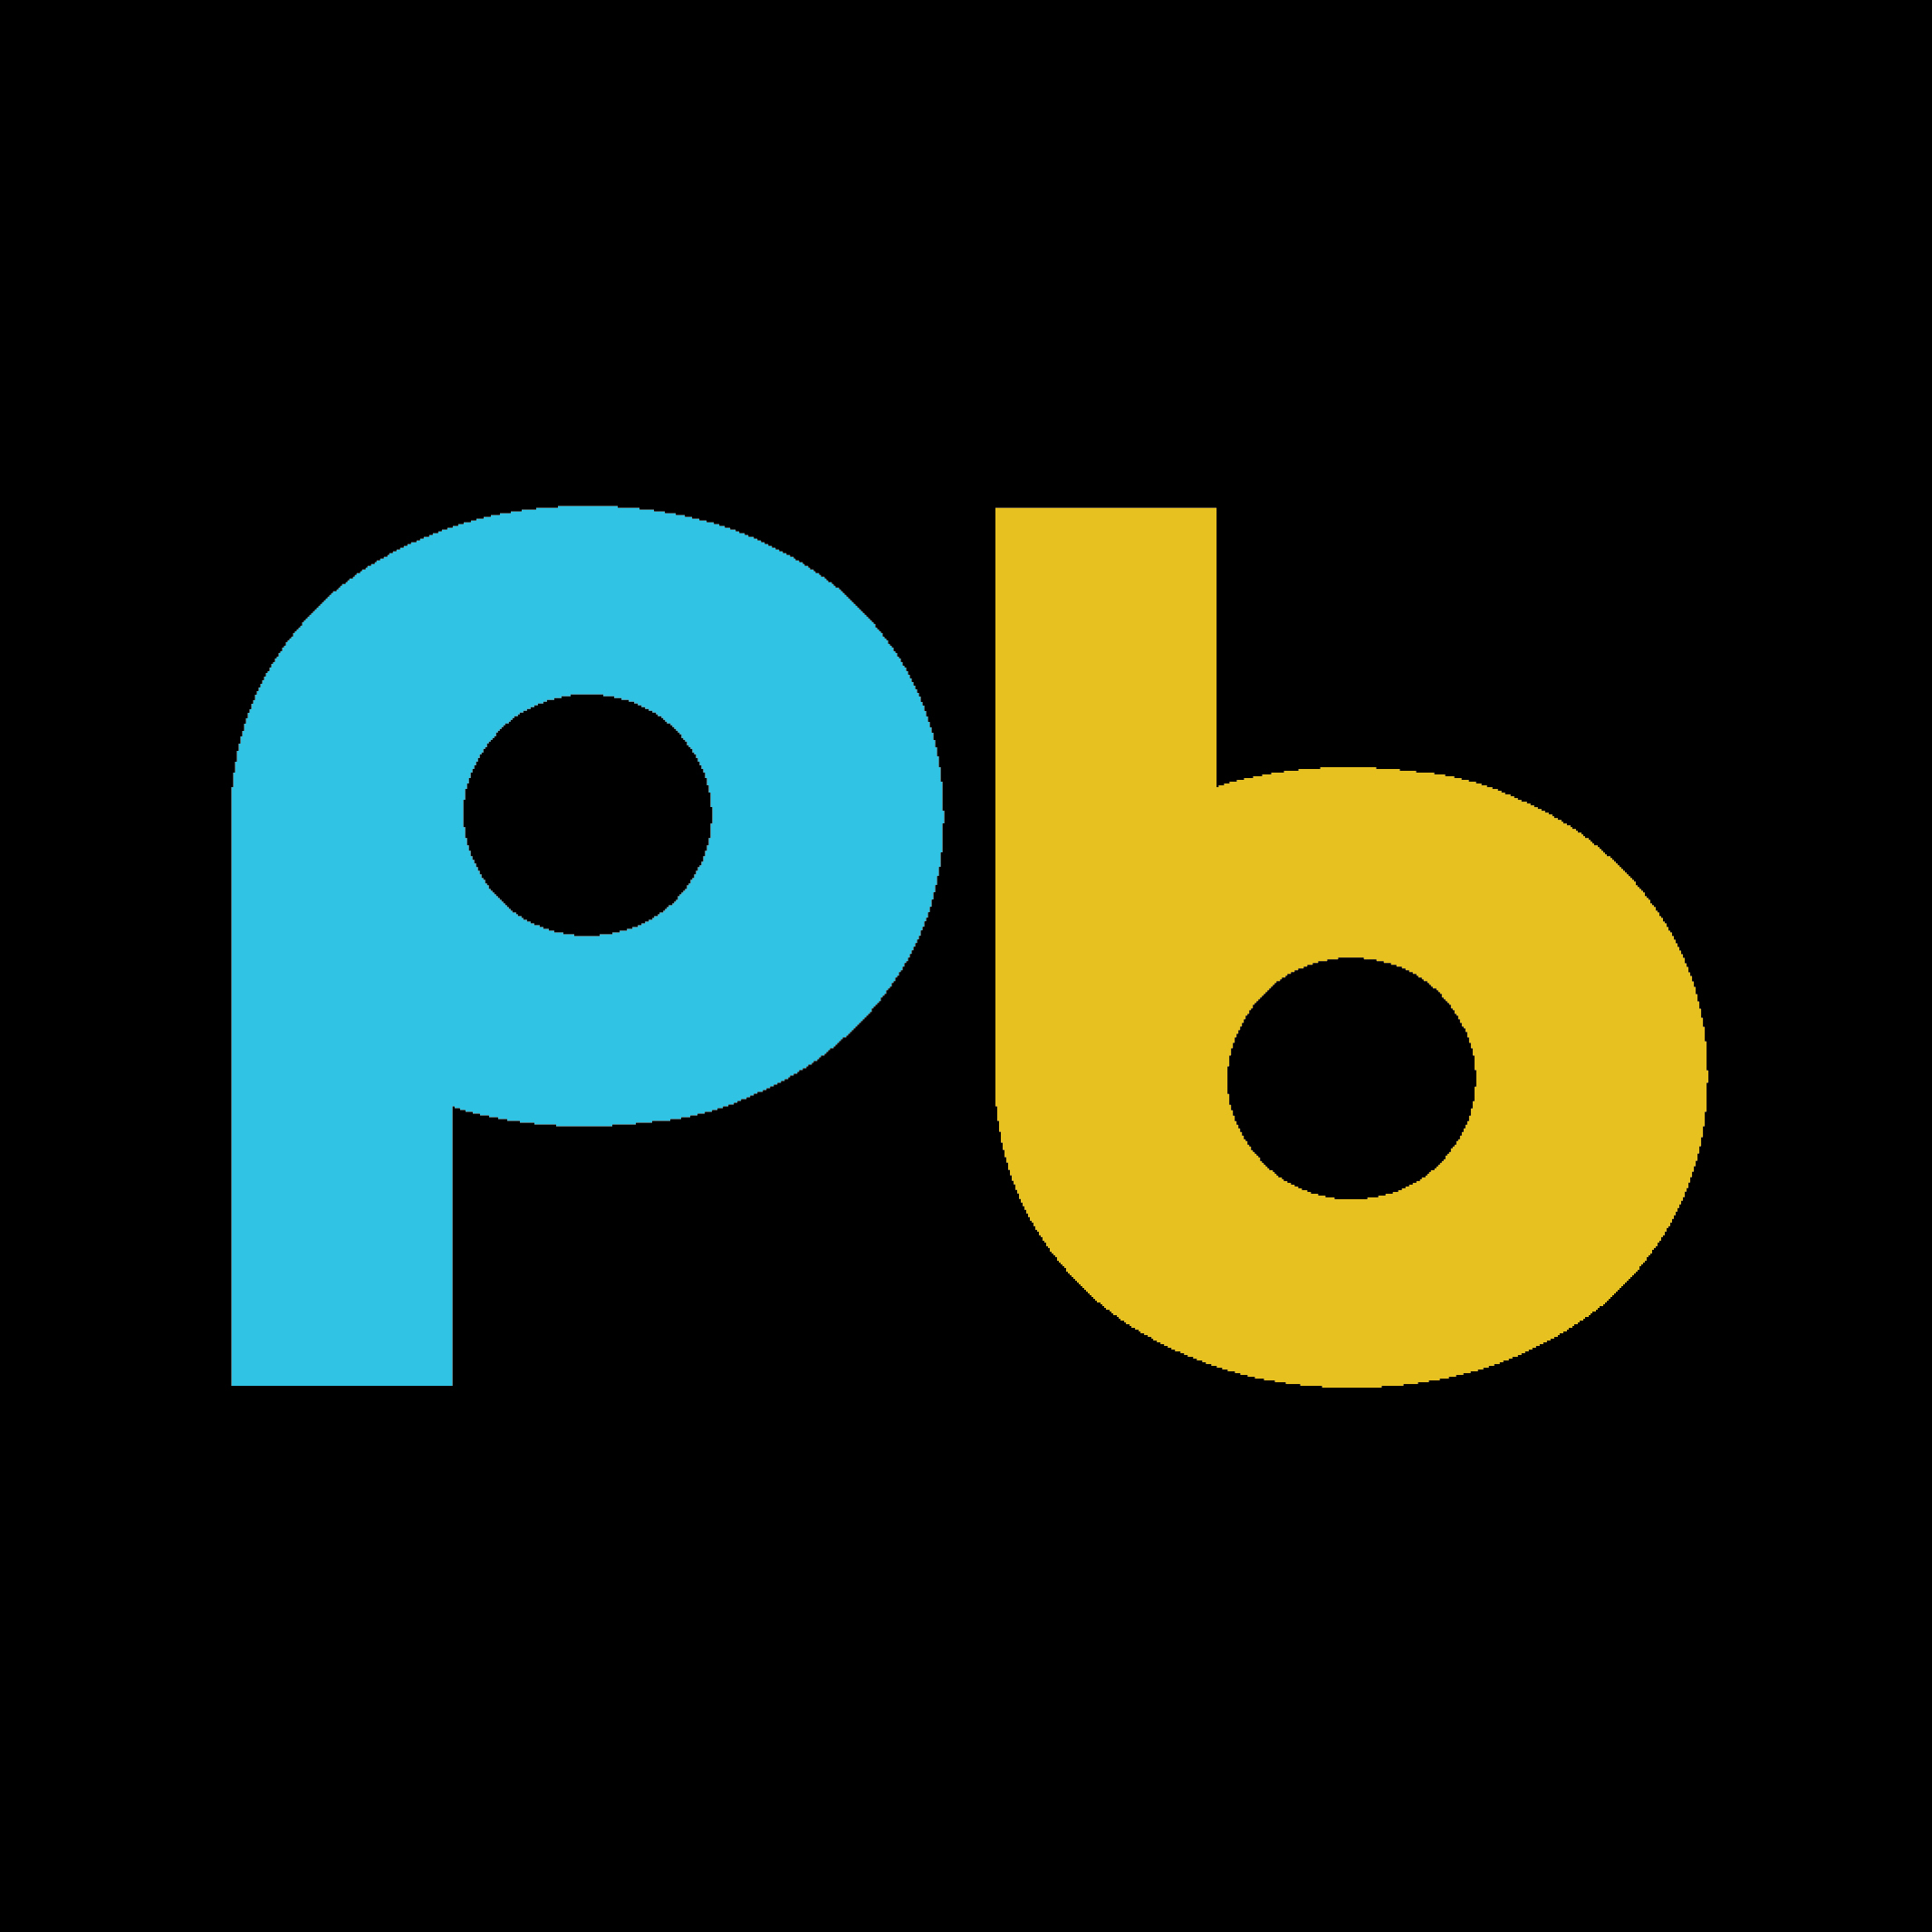 Podbeat logo